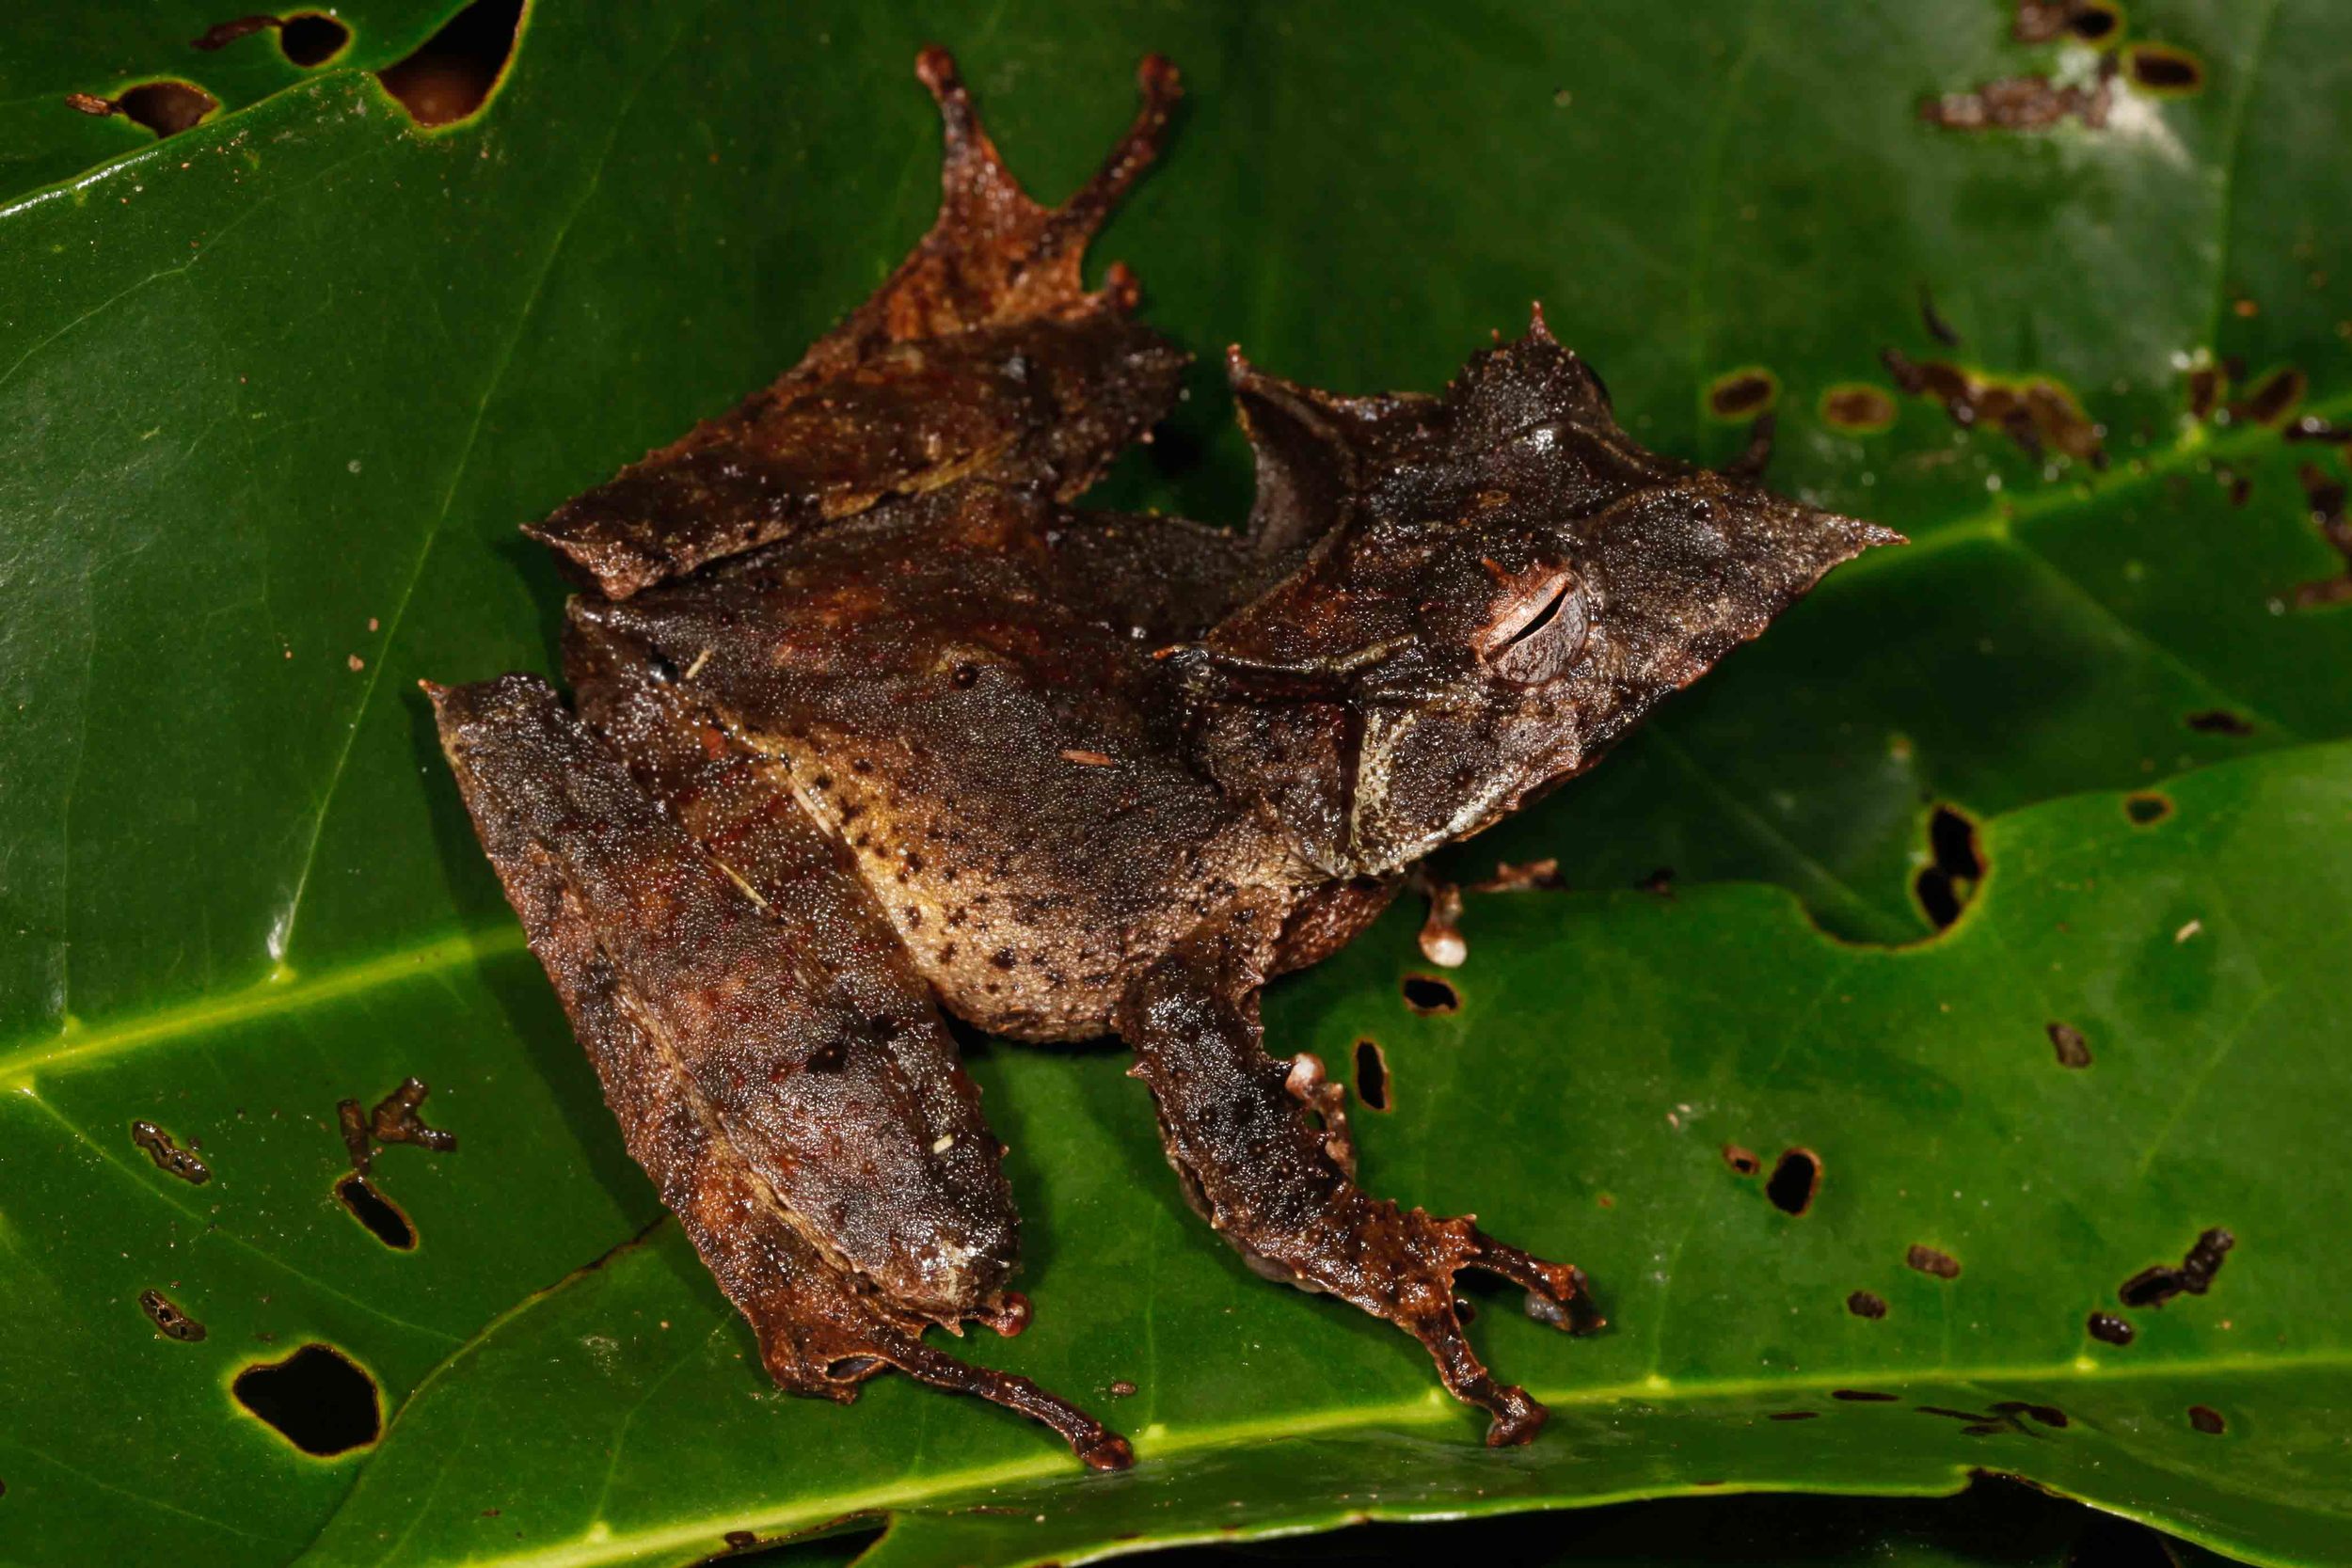 Hemiphractus proboscideus, Long Nosed Casque Headed Treefrog (Photo by Matt Cage)